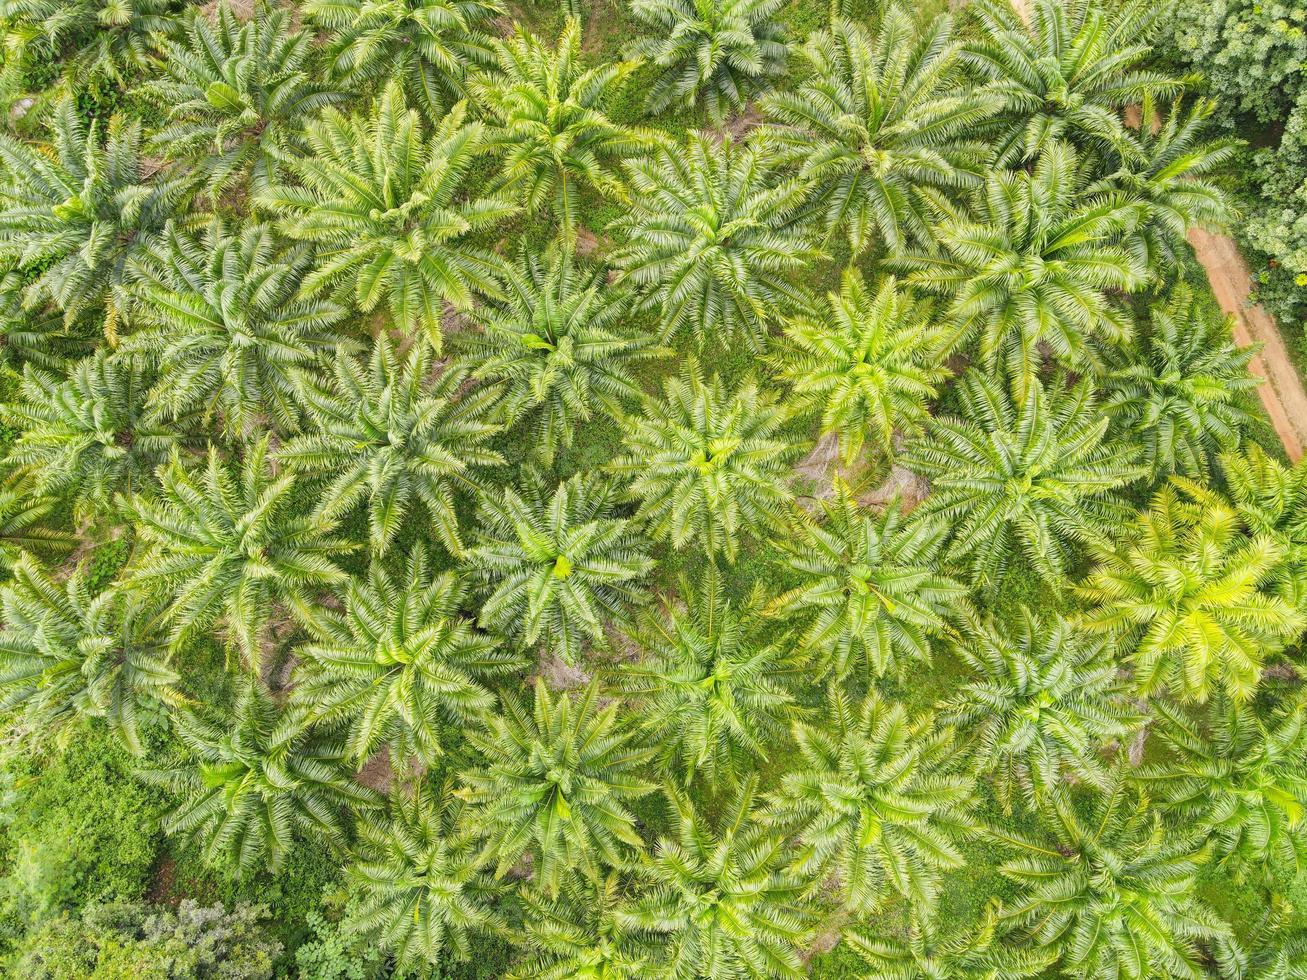 vue de dessus des feuilles de palmier d'en haut des cultures en vert, vue à vol d'oiseau plante d'arbre tropical, vue aérienne du palmier champs verts nature fond de ferme agricole photo